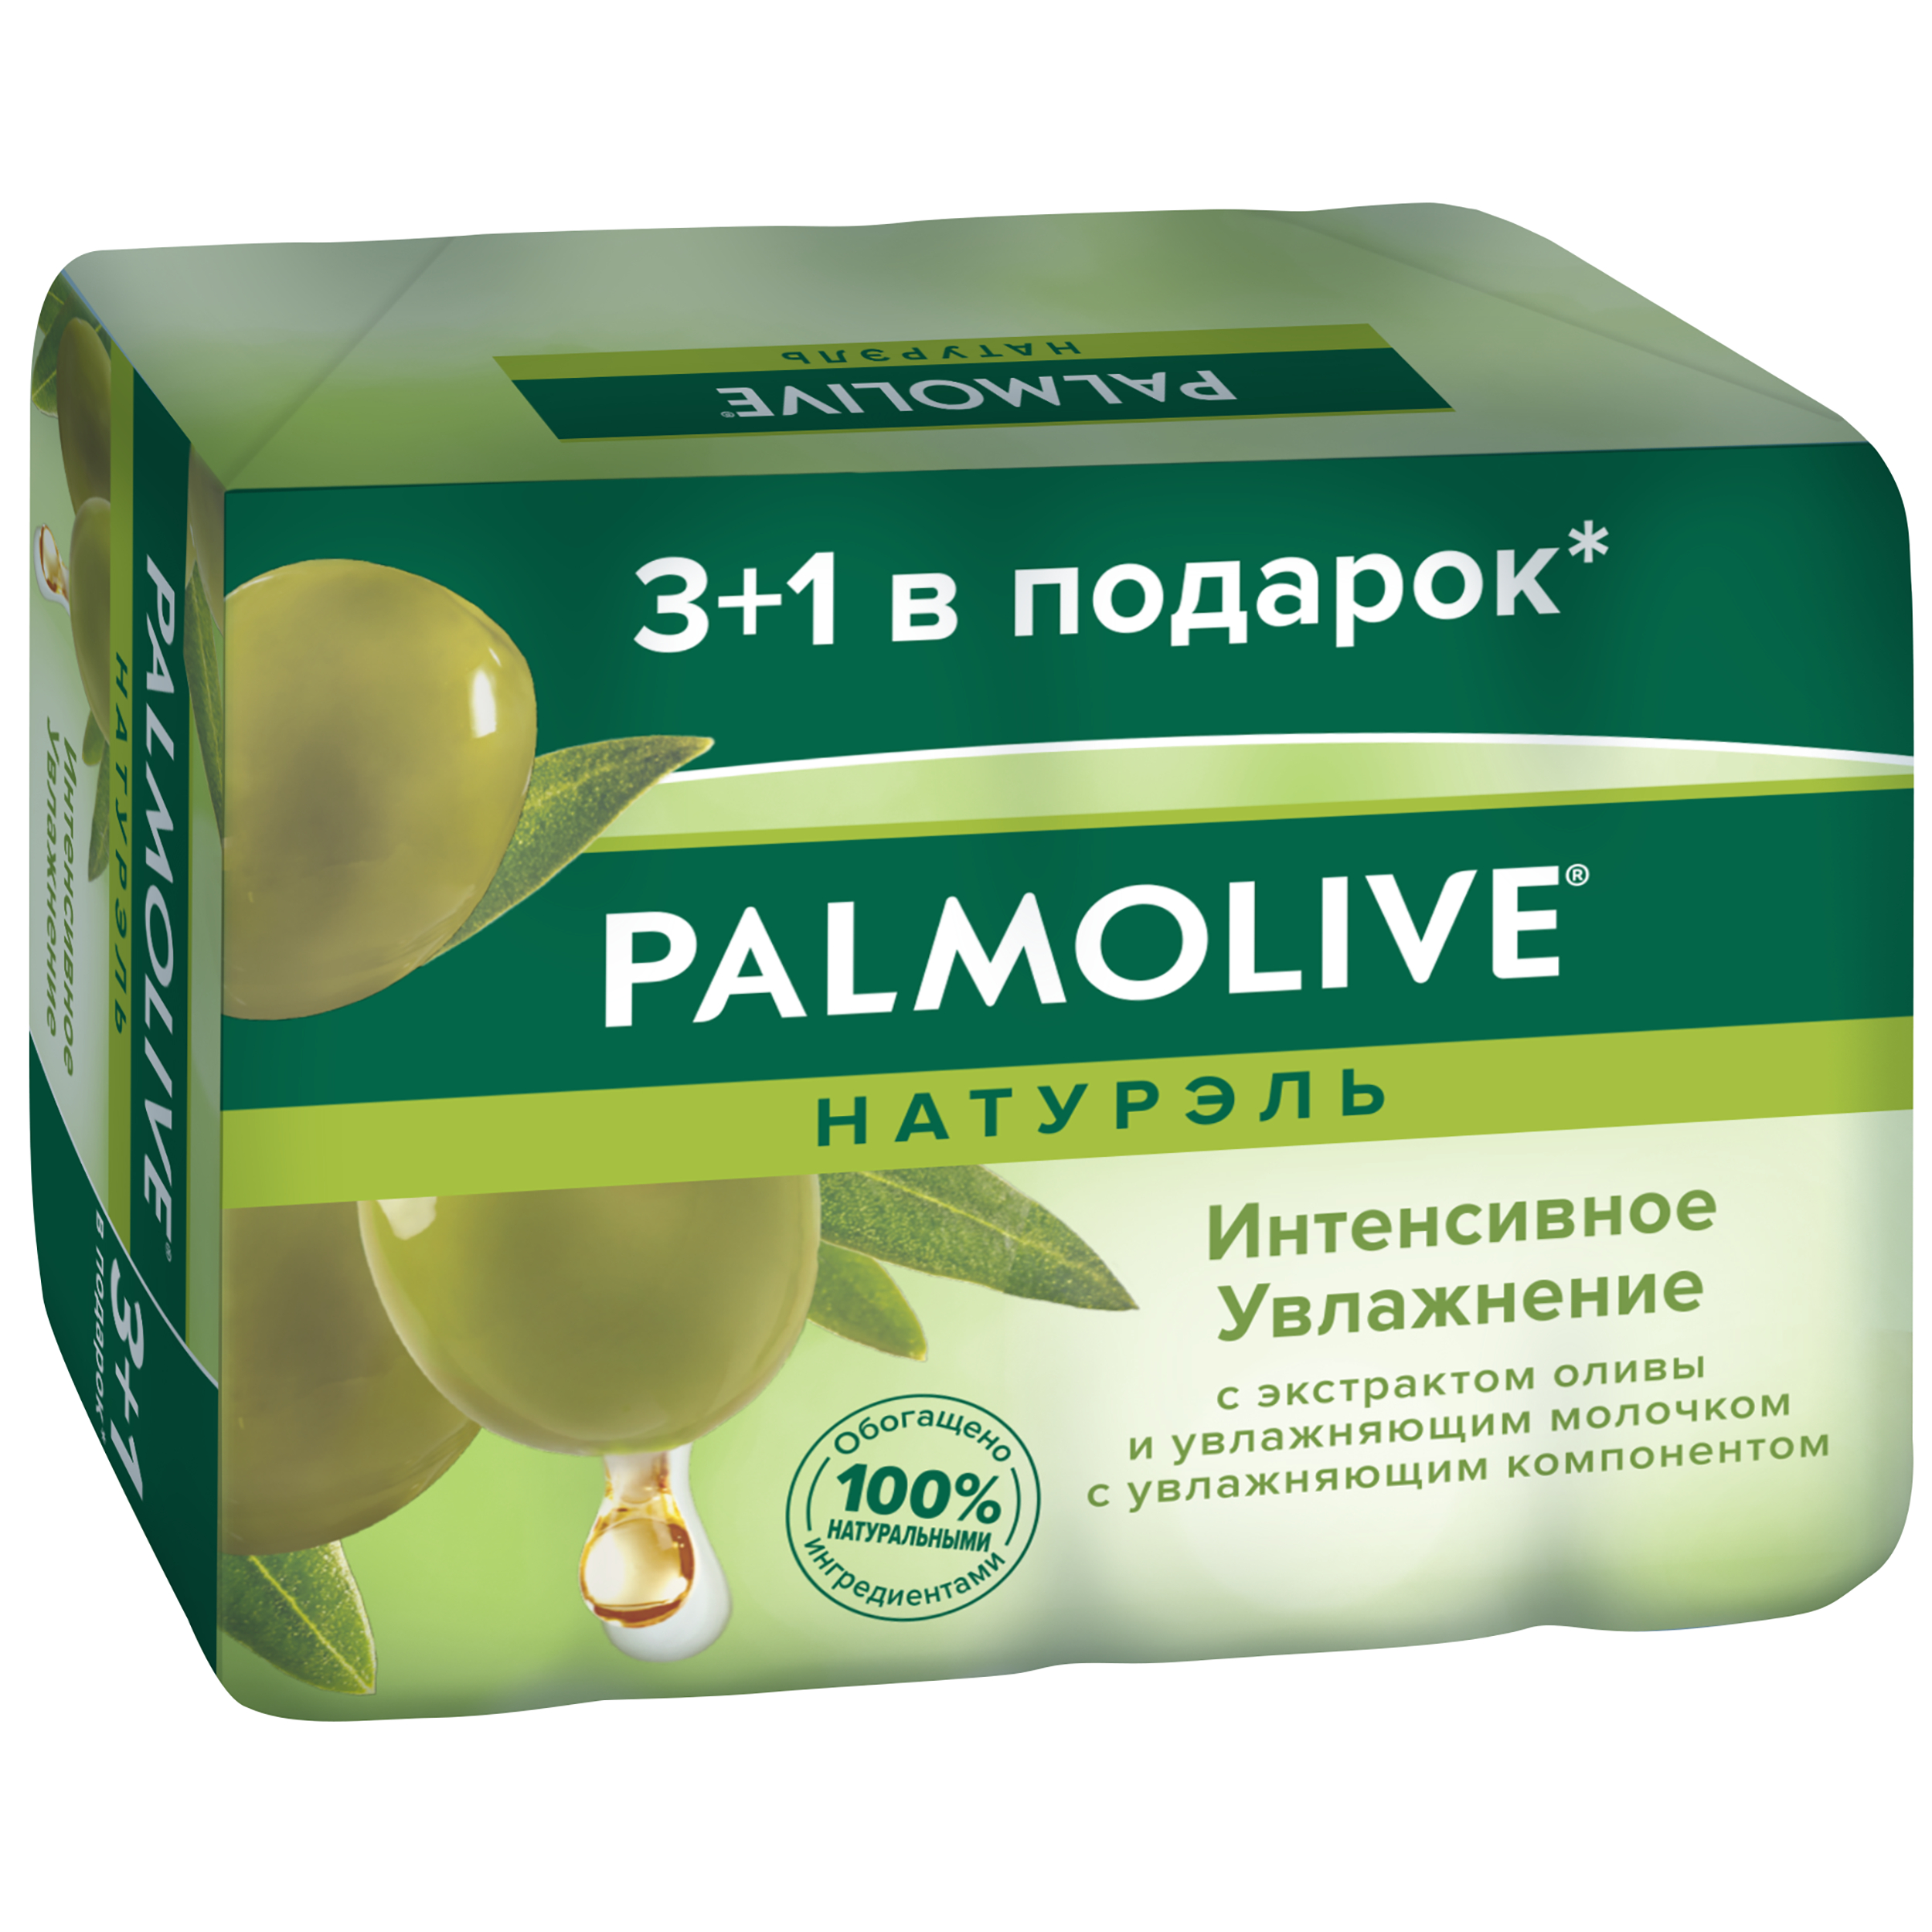 Косметическое мыло Palmolive Натурэль Интенсивное увлажнение с экстрактом оливы 4x90 г exxe косметическое мыло 1 1 лавандовый 300